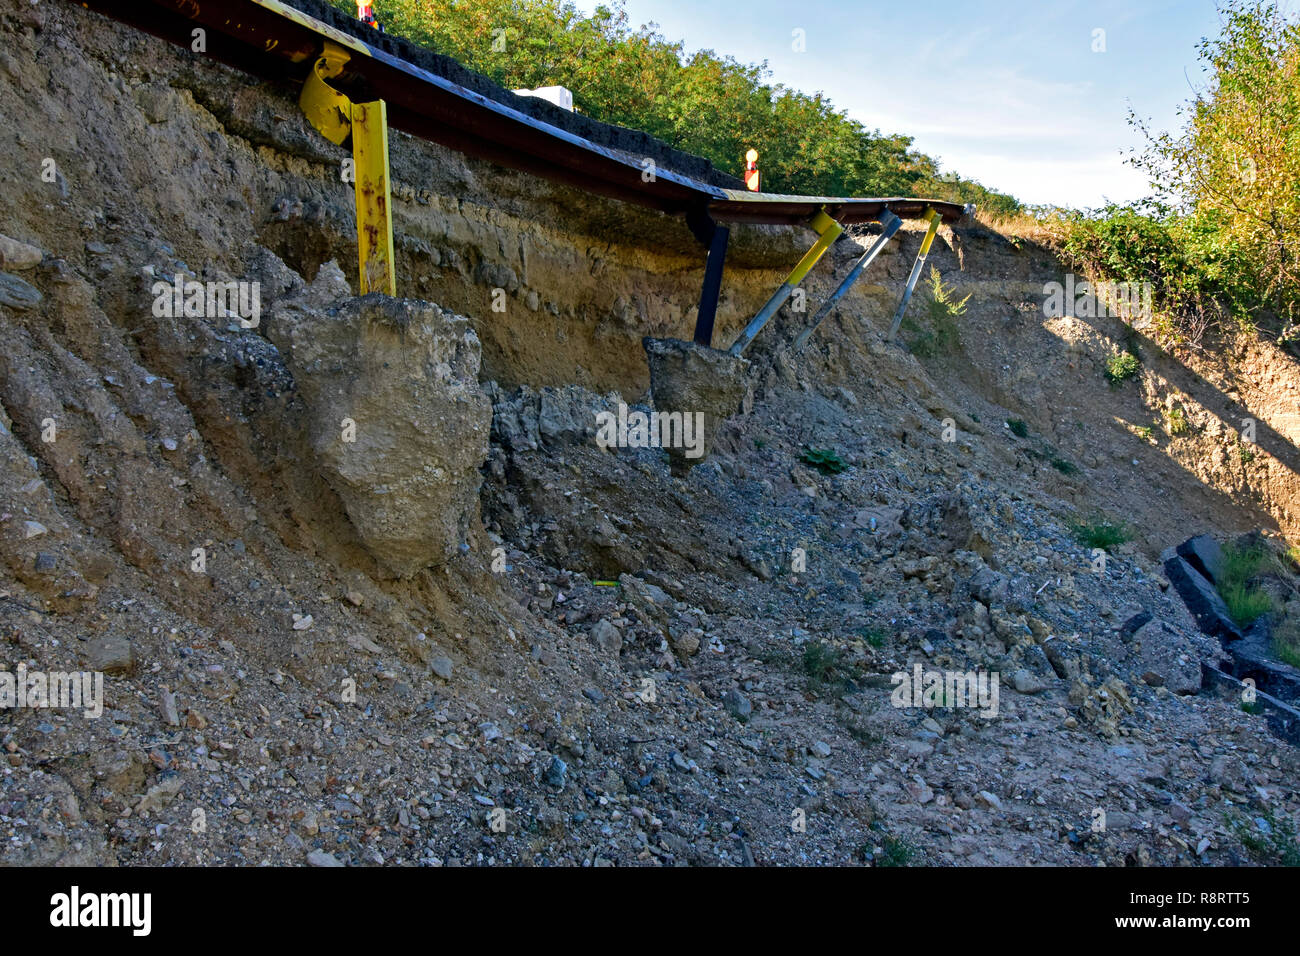 Rupture de remblai routier et garde-corps panne causée par glissement de terrain sur la route E81, à proximité de Zalau, Salaj, Roumanie Banque D'Images